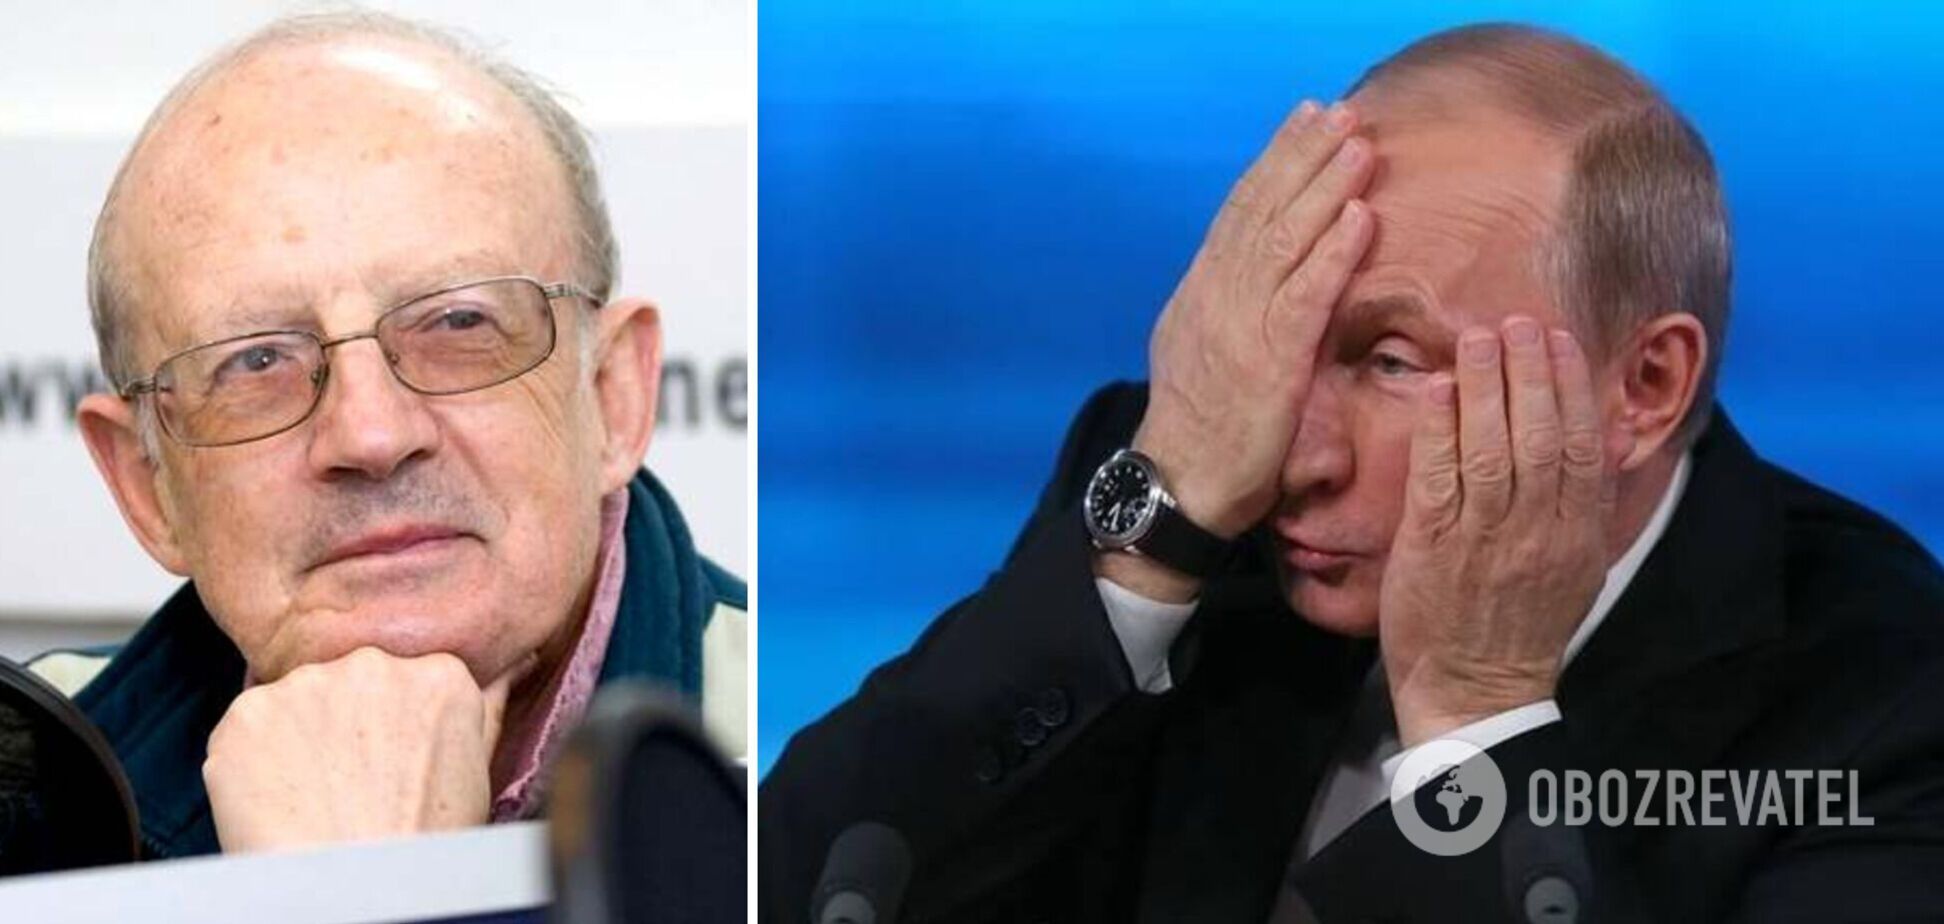 США и российские элиты ведут переговоры об устранении Путина: Пионтковский рассказал о 'закулисных играх'